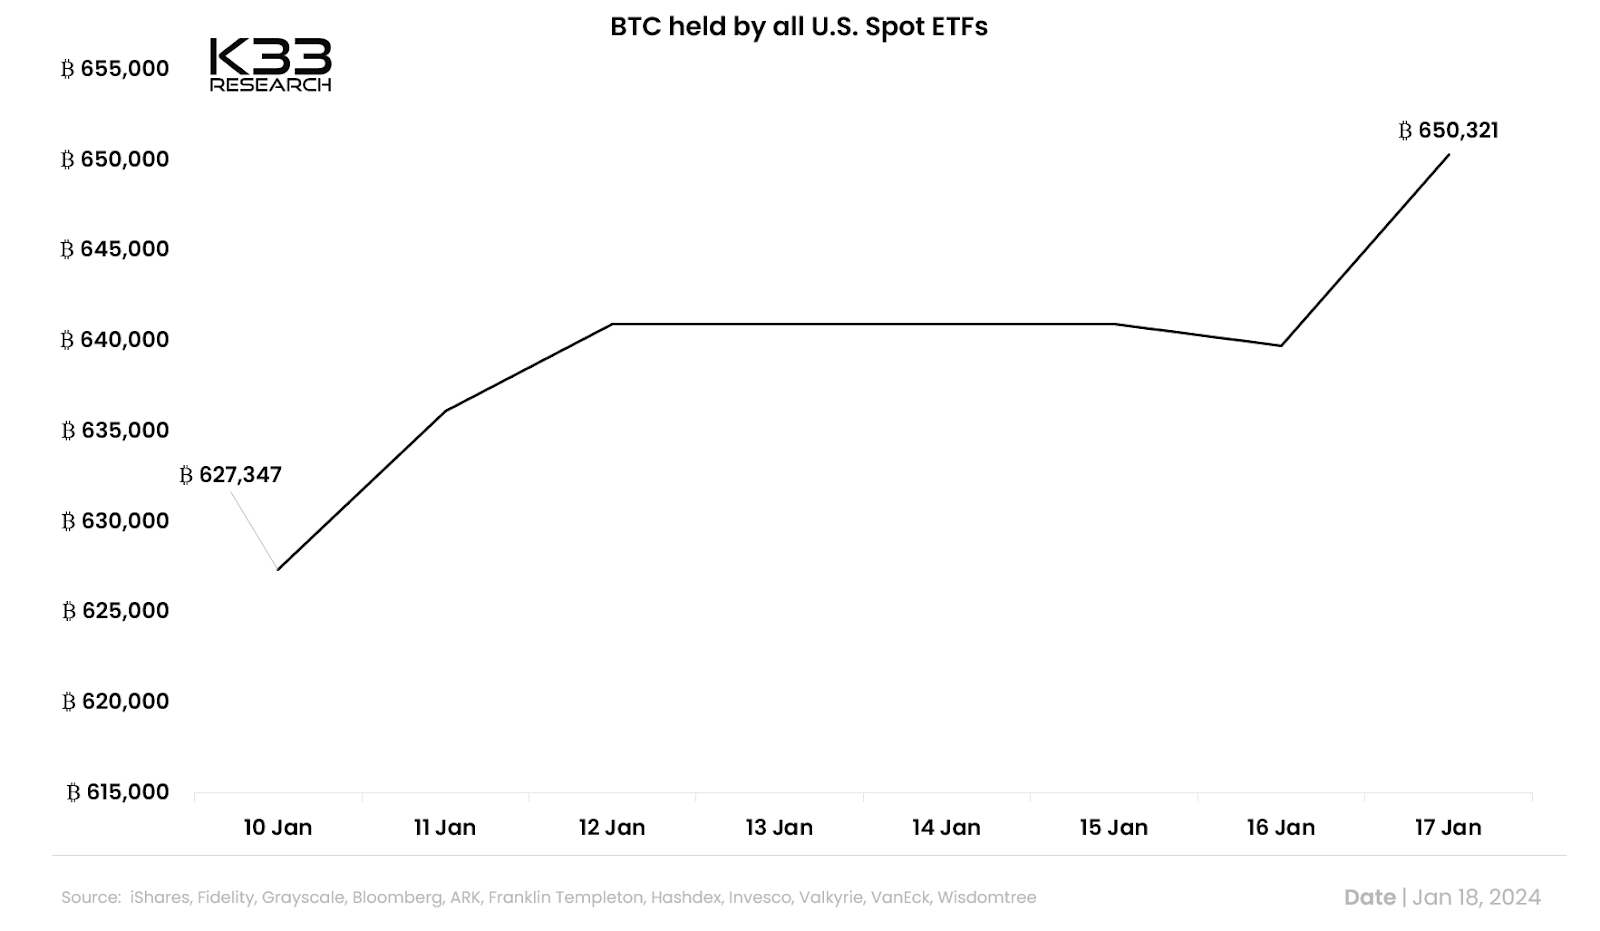 Totaal Bitcoin (BTC) aangehouden door Amerikaanse Spot ETF's.